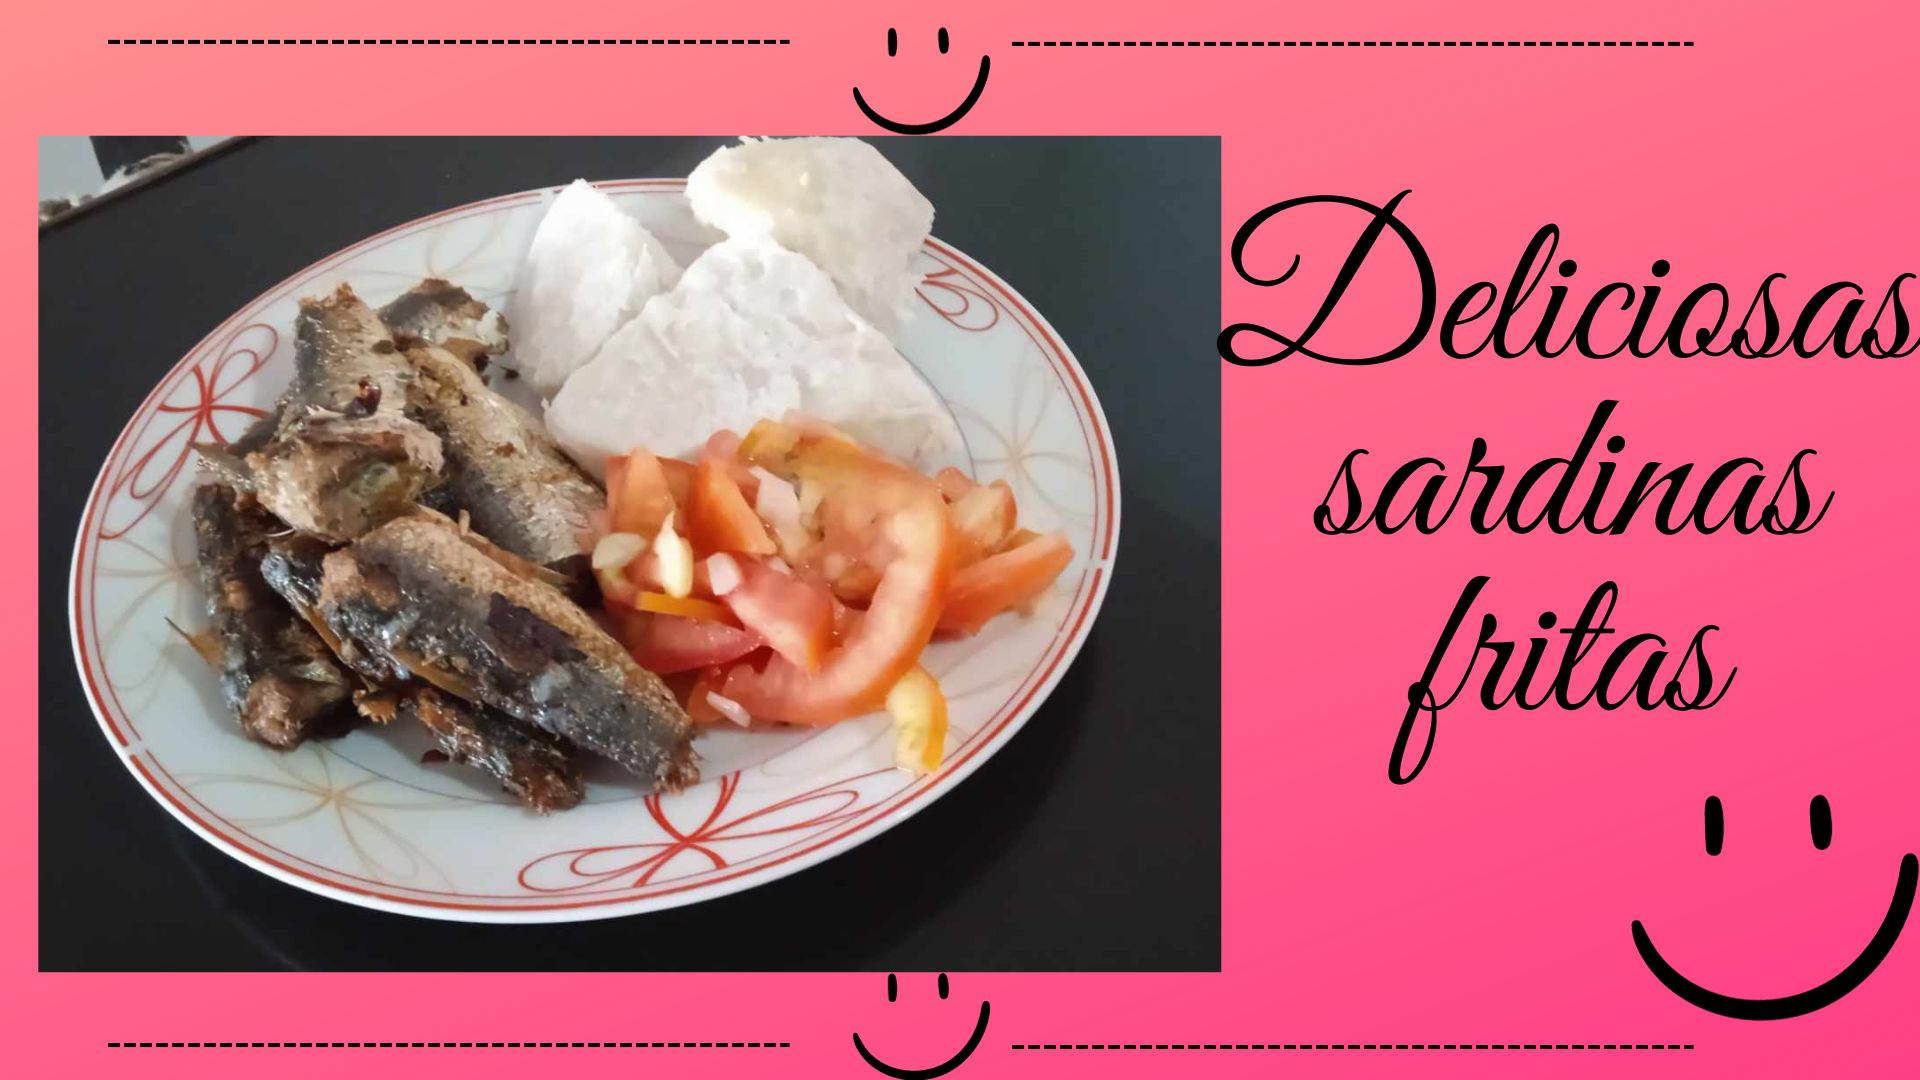 Deliciosas sardinas fritas.jpg